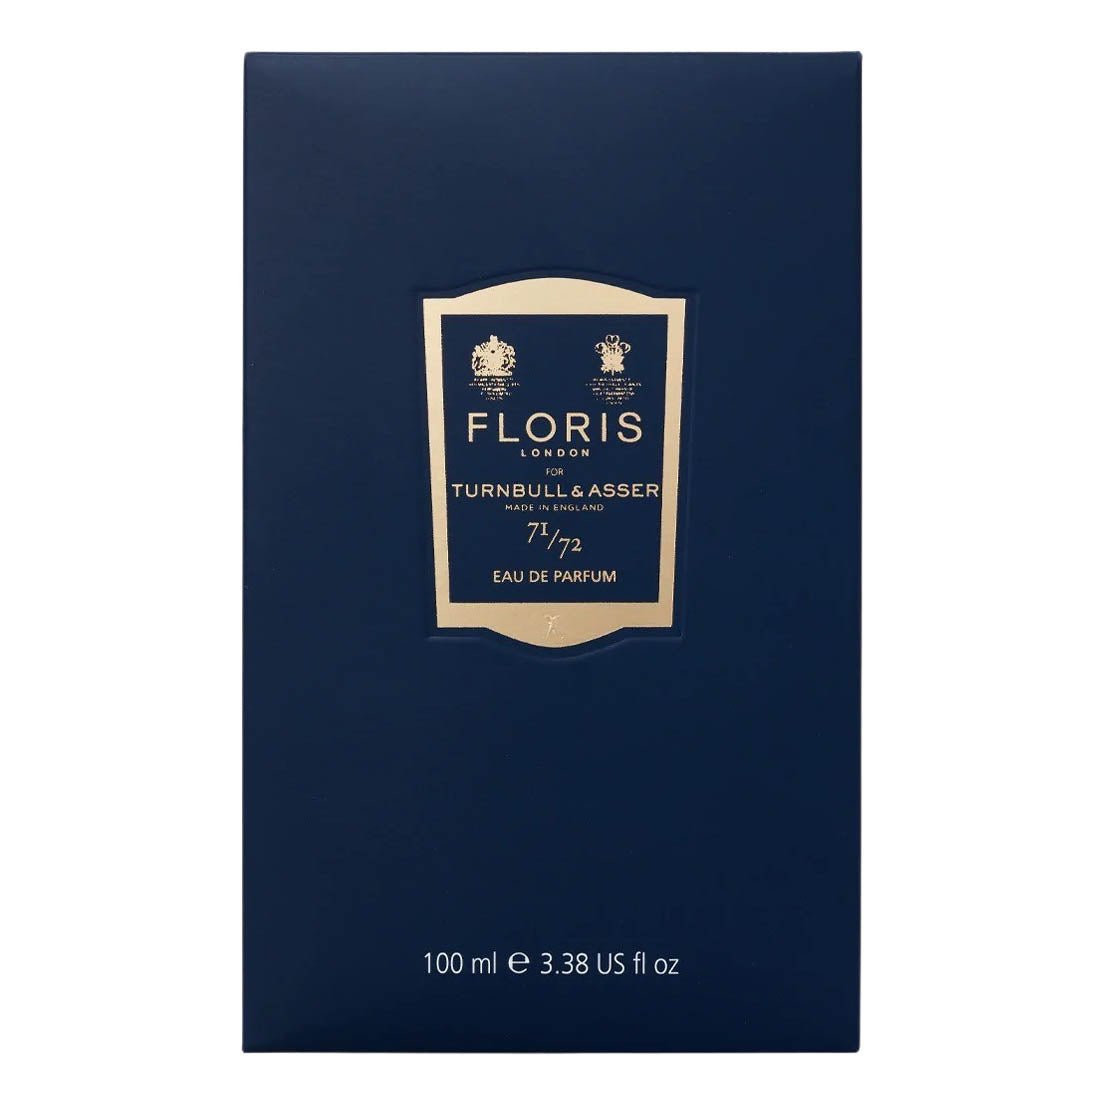 Floris London 71/72 Eau de Parfum 100 ml